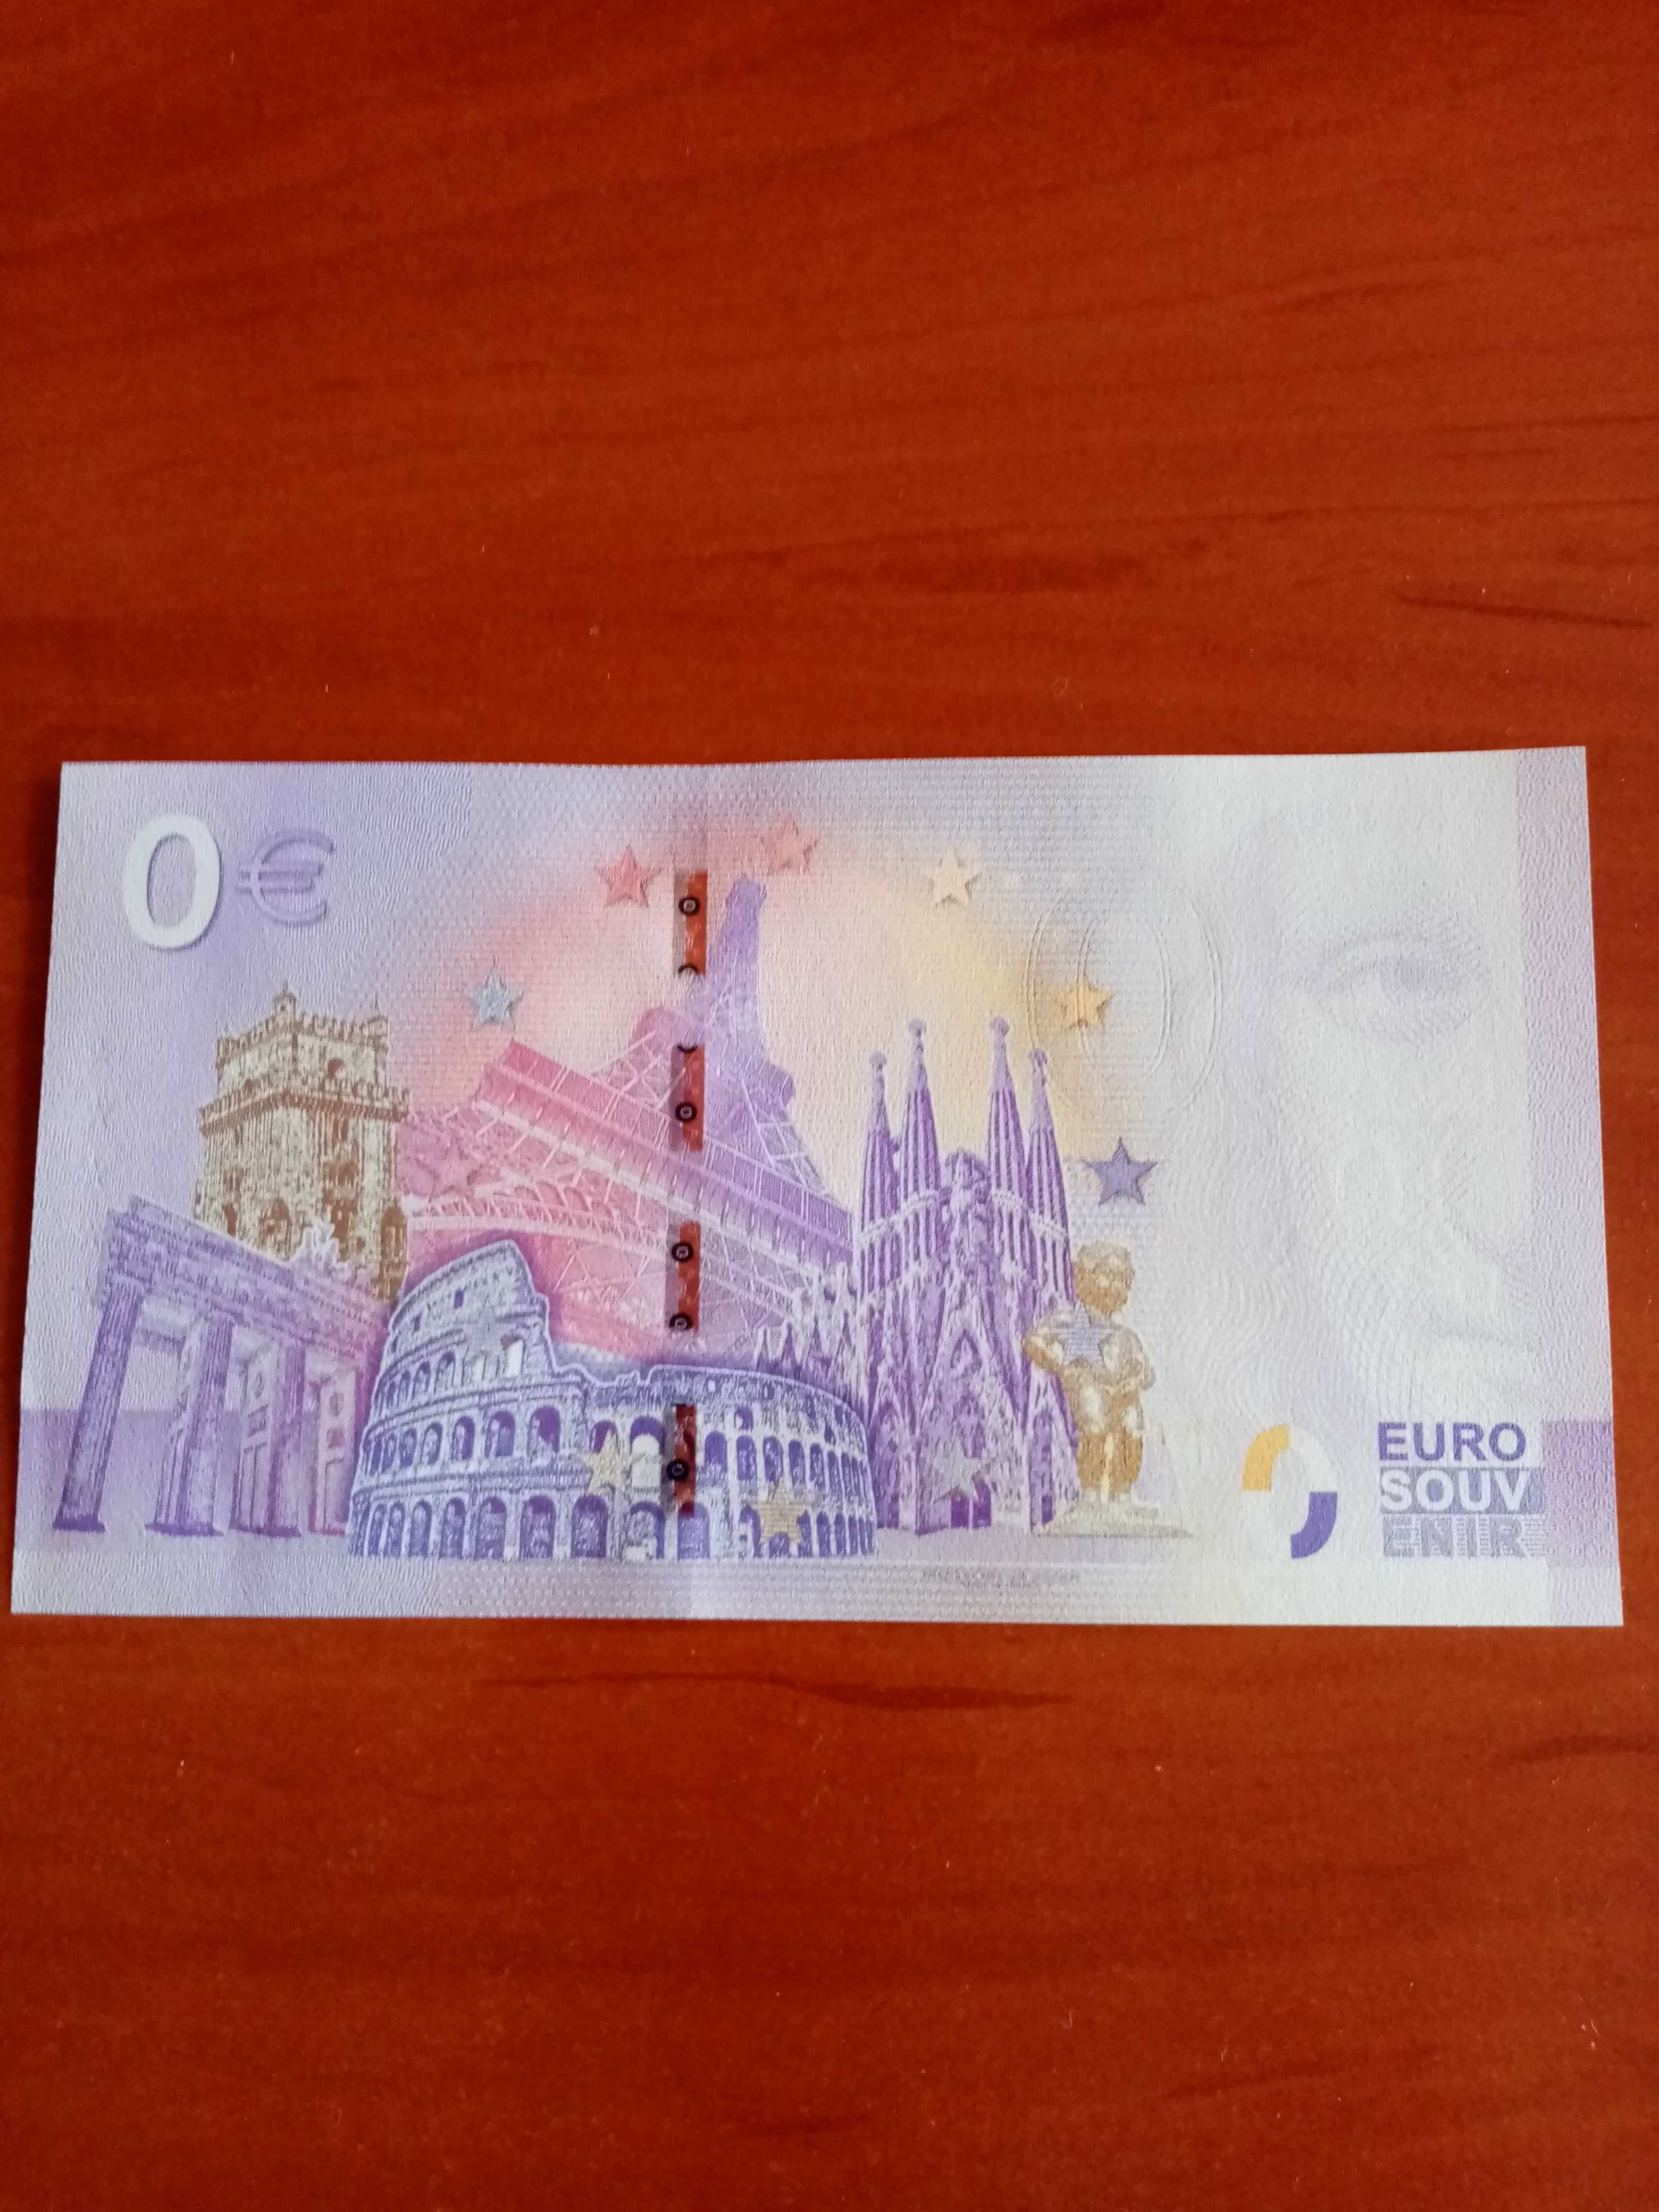 Banknot 0 euro  100 rocznica urodzin Kazimierza Górskiego.